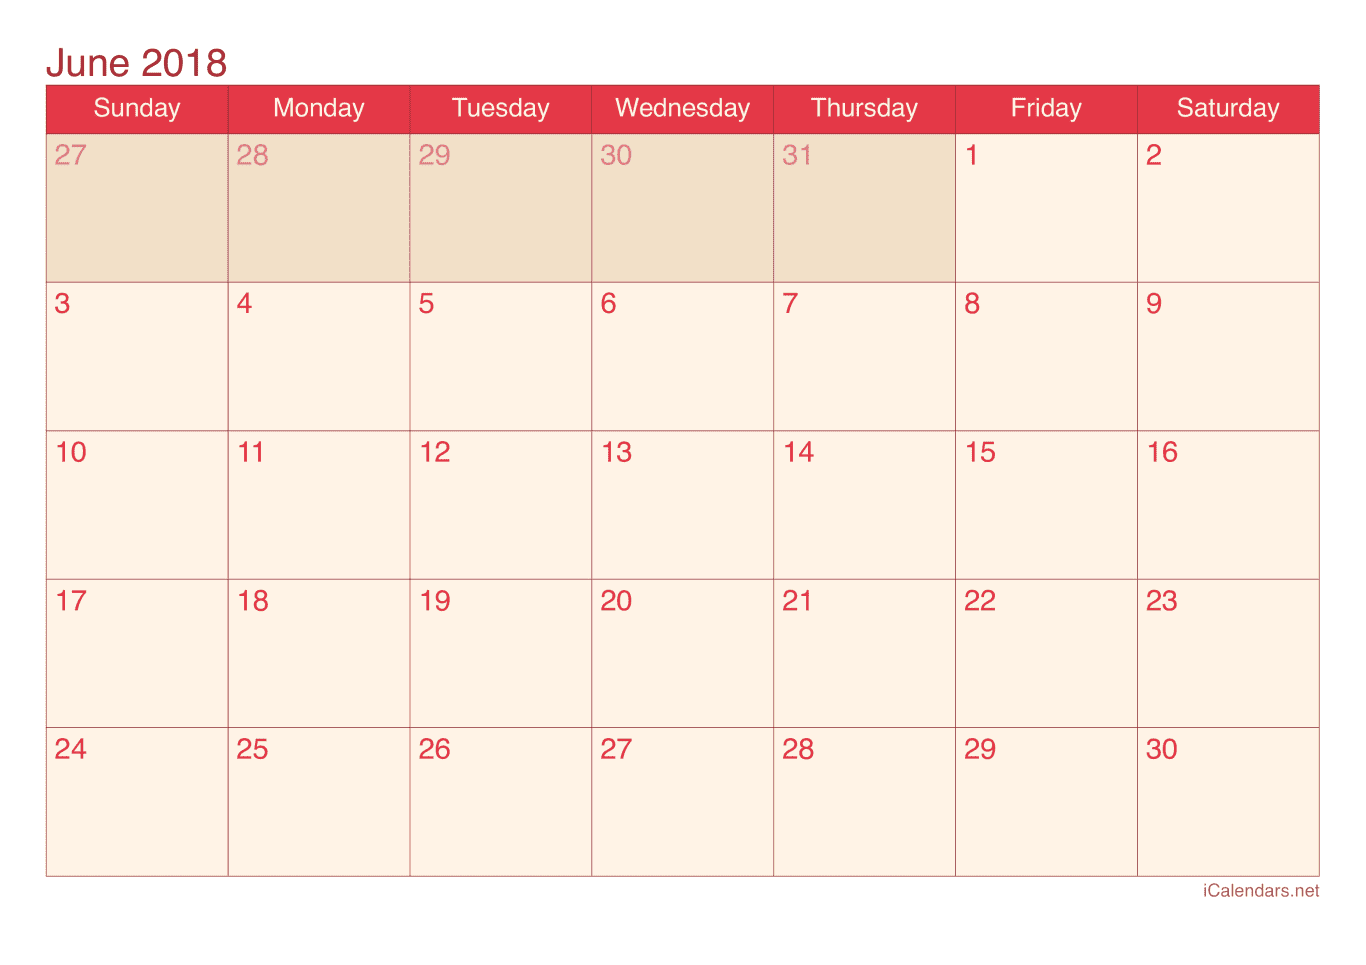 2018 June Calendar - Cherry